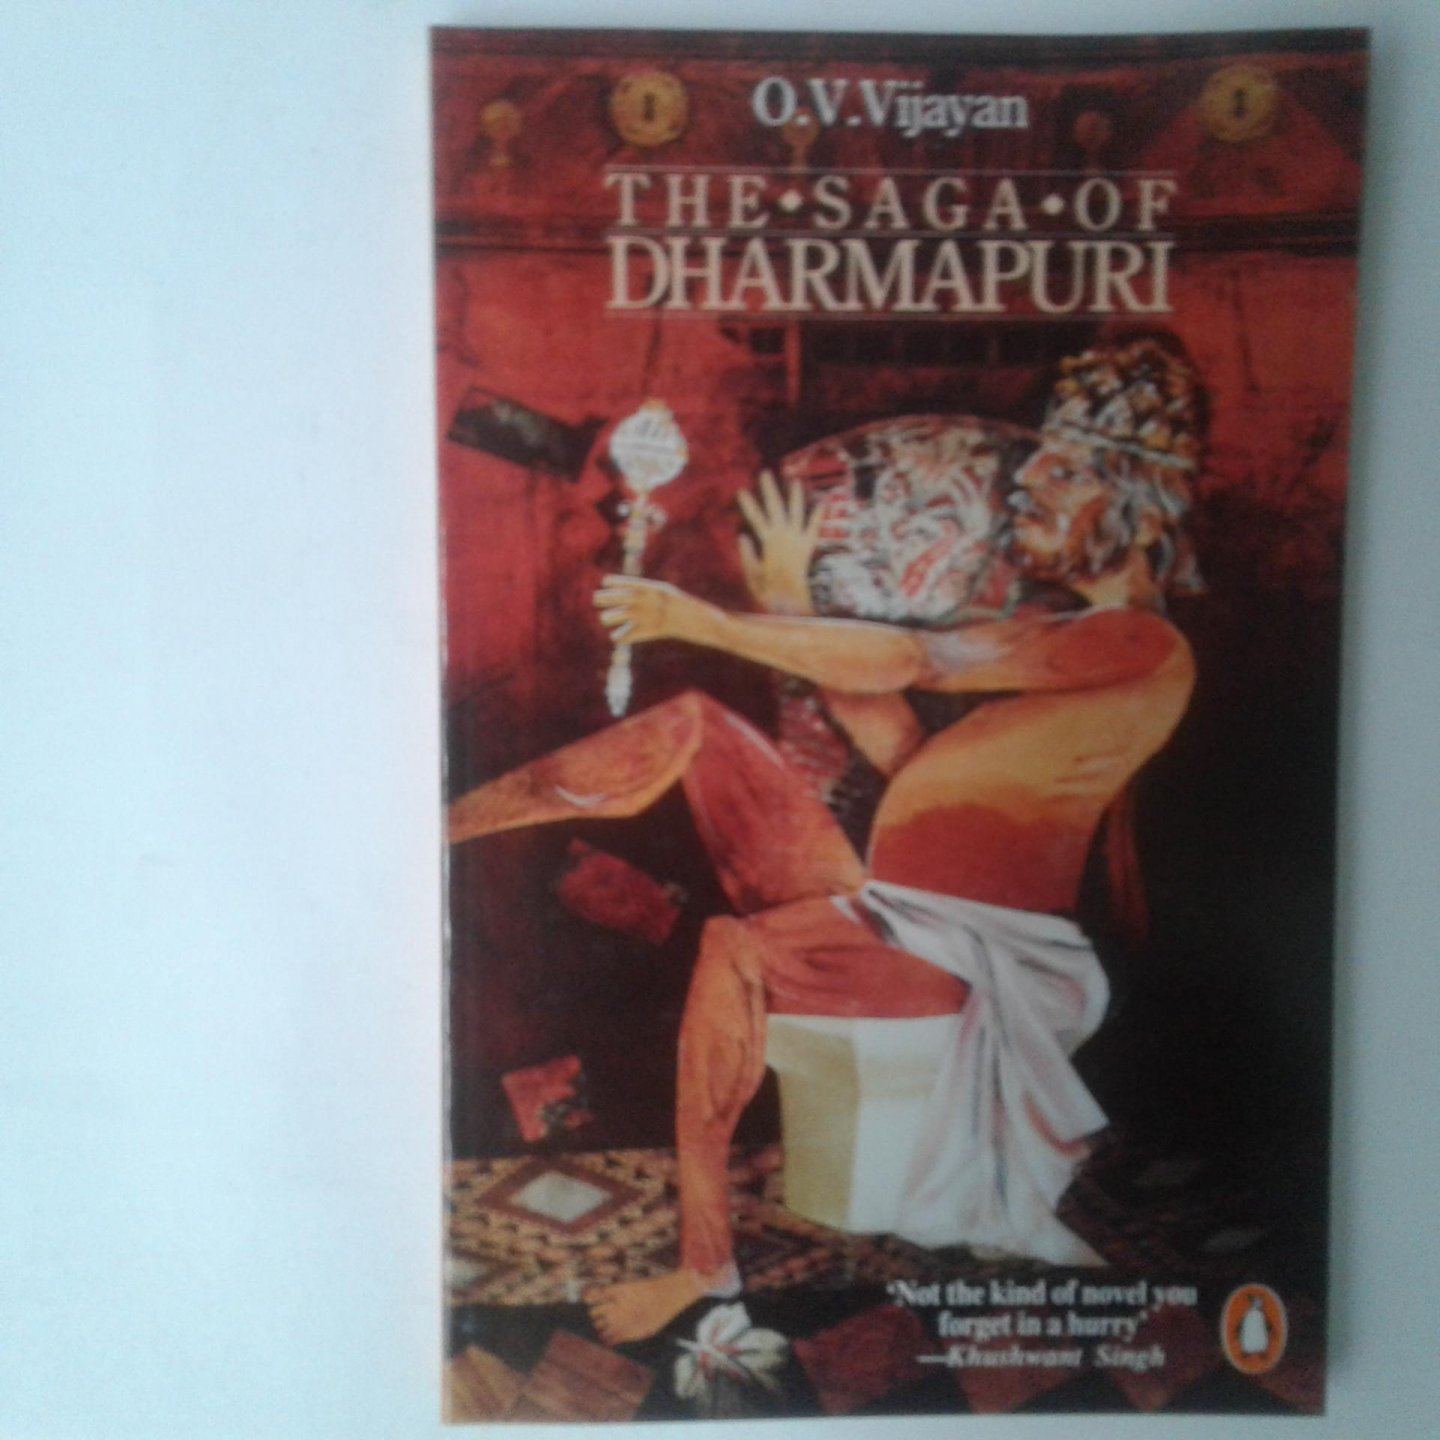 Vijayan, O.V. - The Saga of Dharmapuri